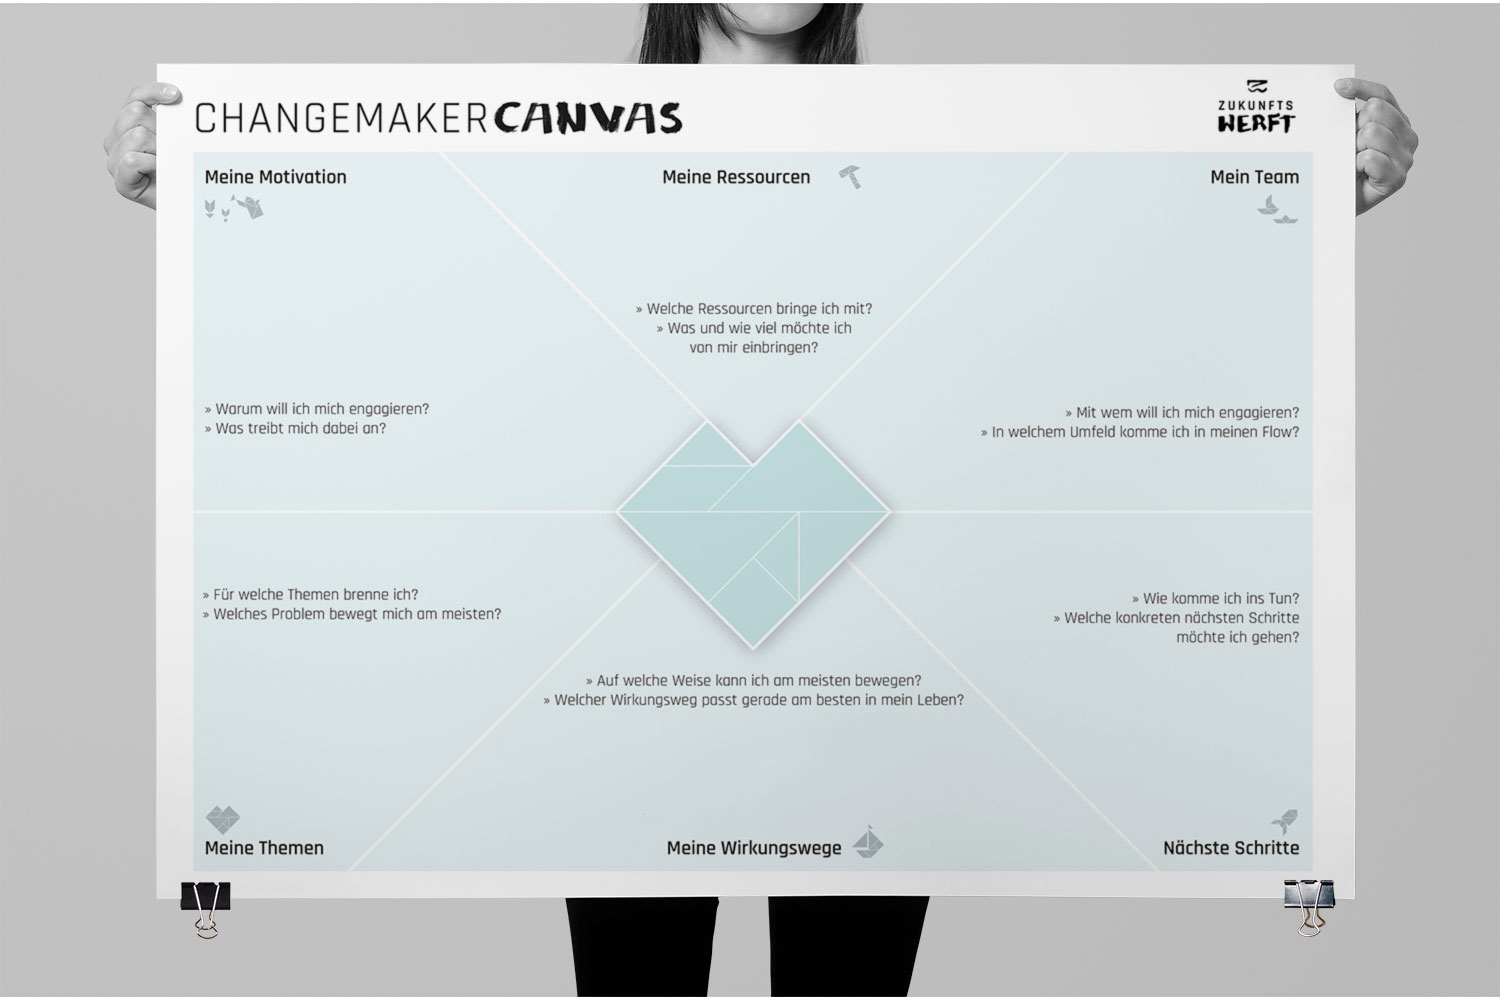 Das Changemaker Canvas besteht aus sechs Feldern, unter anderem Deine Motivation, Deine Ressourcen und Herzensthemen. Die Bearbeitung der sechs Felder kann eine Hilfe sein, die Themen und Wege zu finden, für die Du dich einsetzen möchtest.